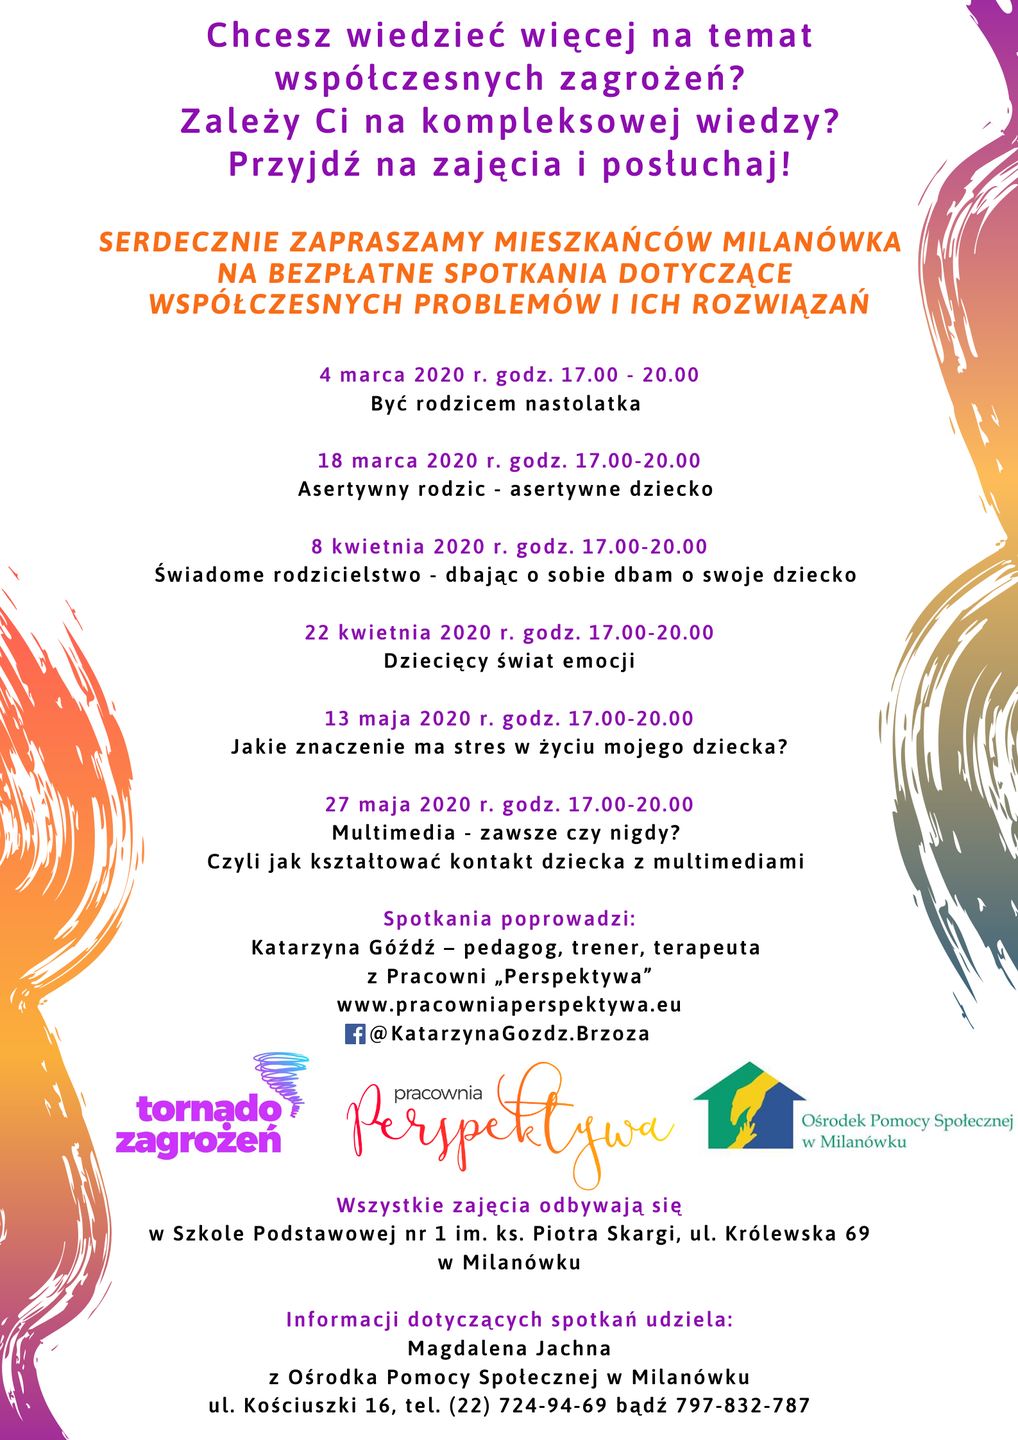 Plakat promujący otwarte spotkania profilaktyczne w Milanówku